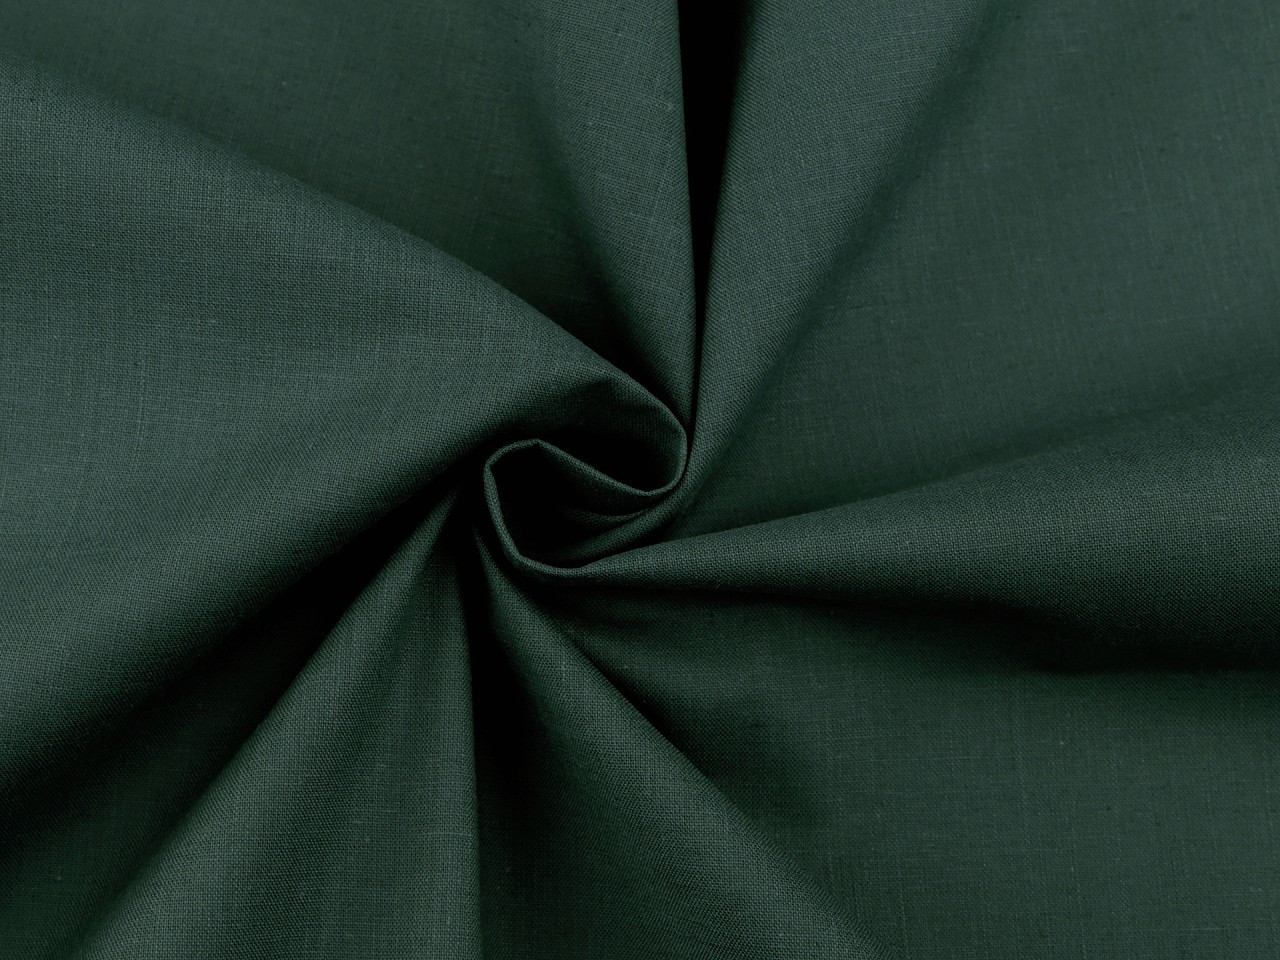 Bavlněná látka / plátno jednobarevná, barva 41 (94) zelená lahvová tmavá